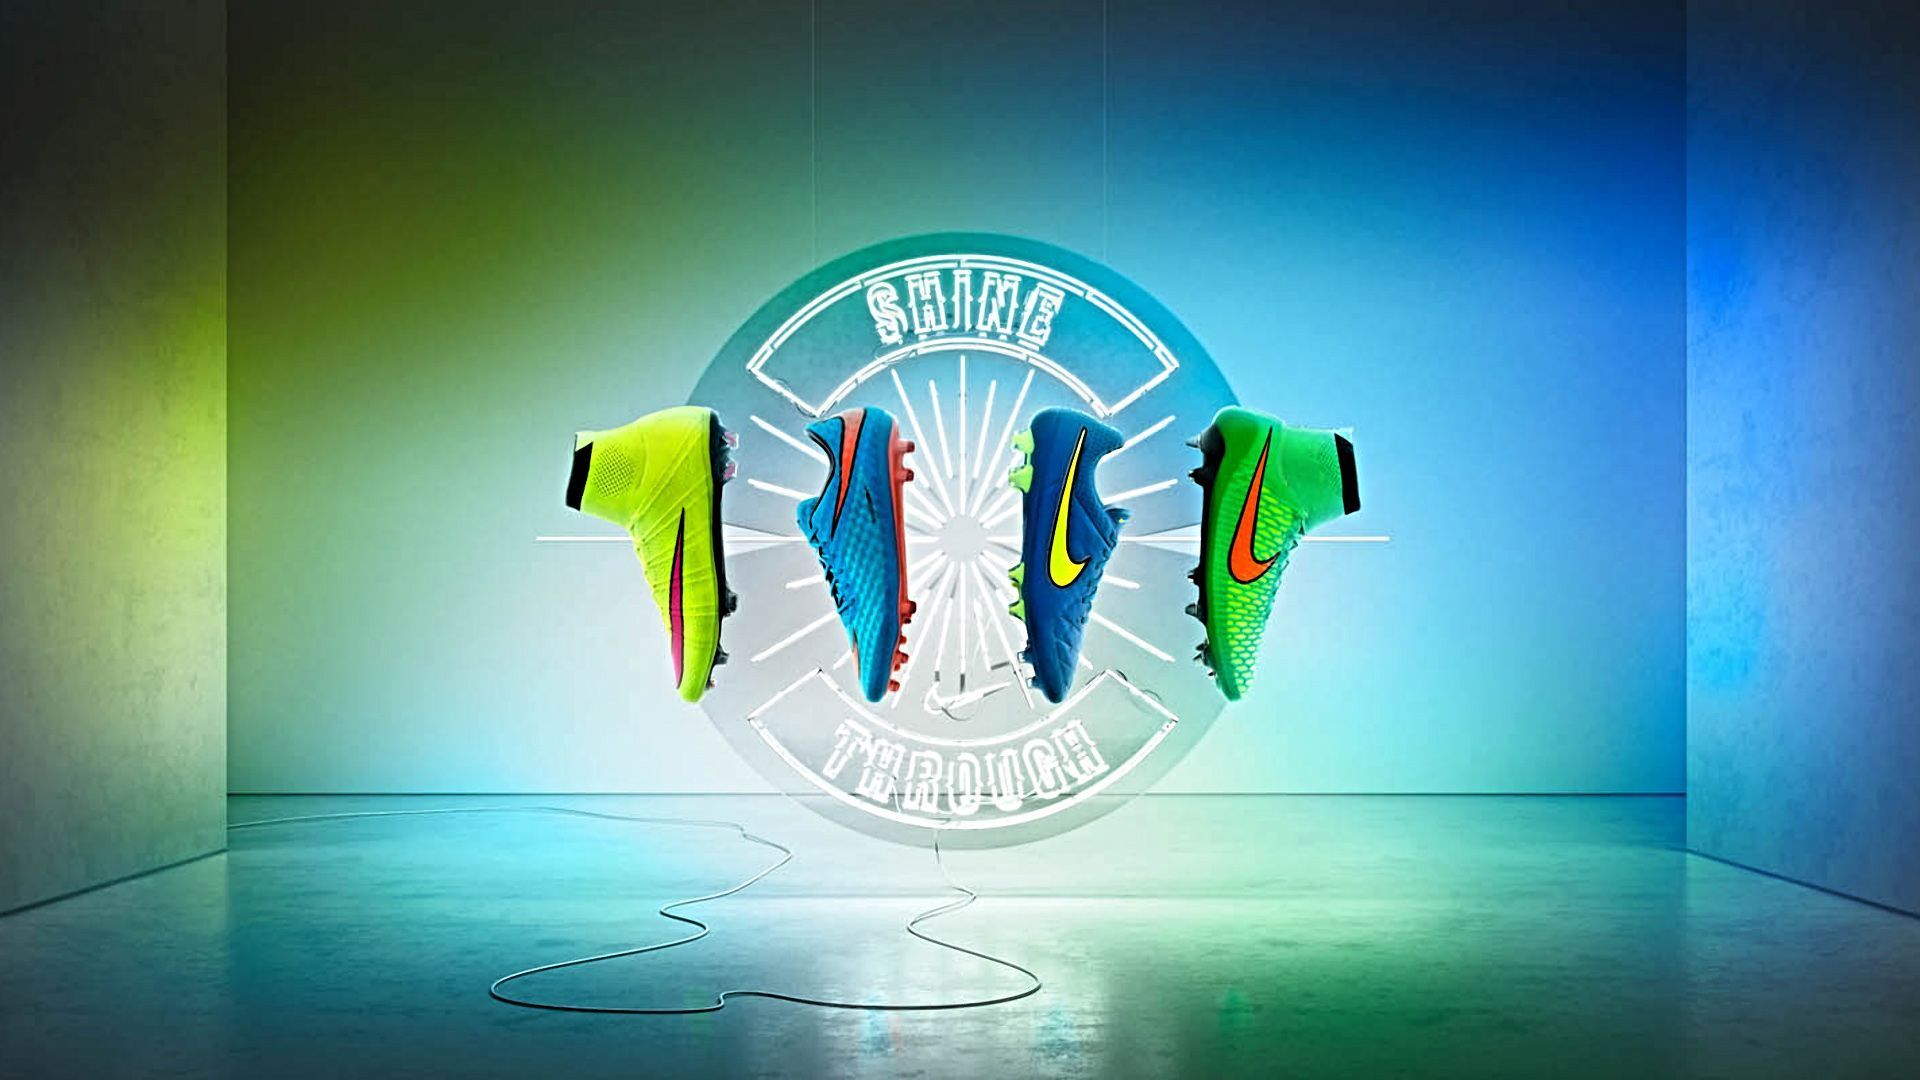 Futbol Soccer Nike Wallpaper